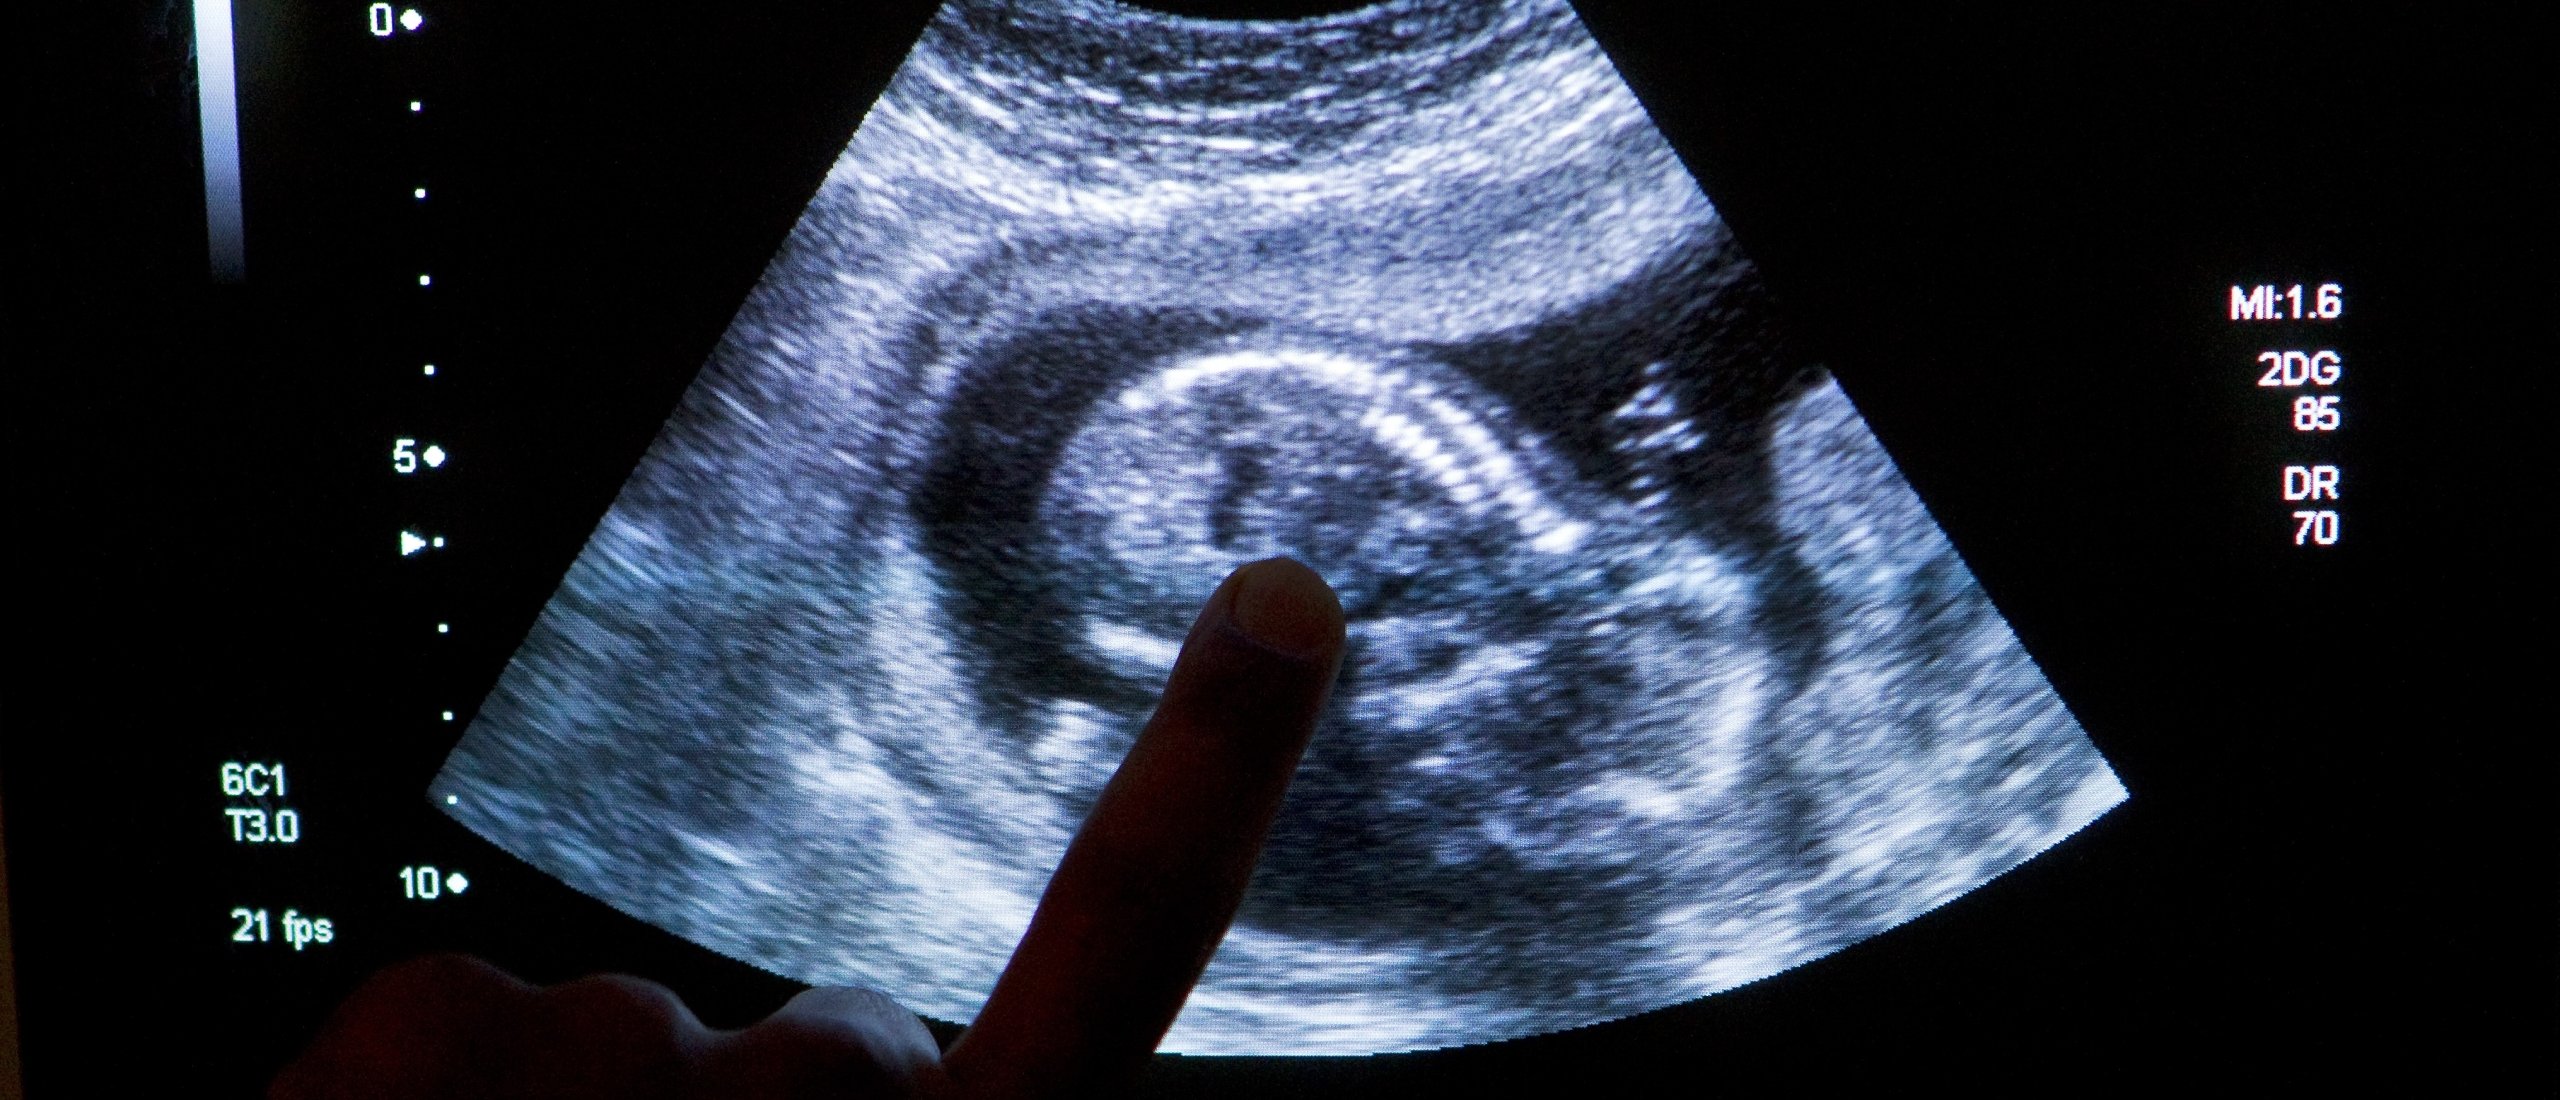 Aantal abortussen vorig jaar flink gestegen volgens inspectie